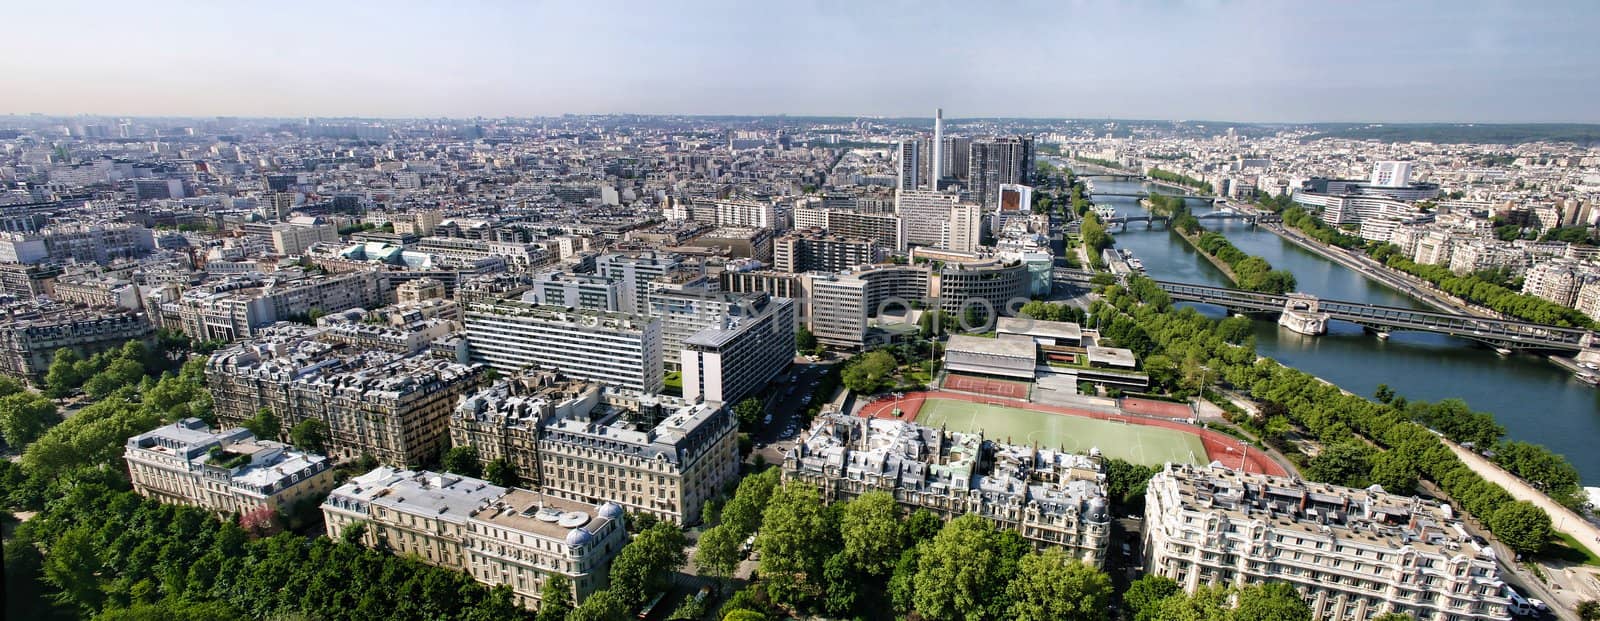  panorama of paris by artush